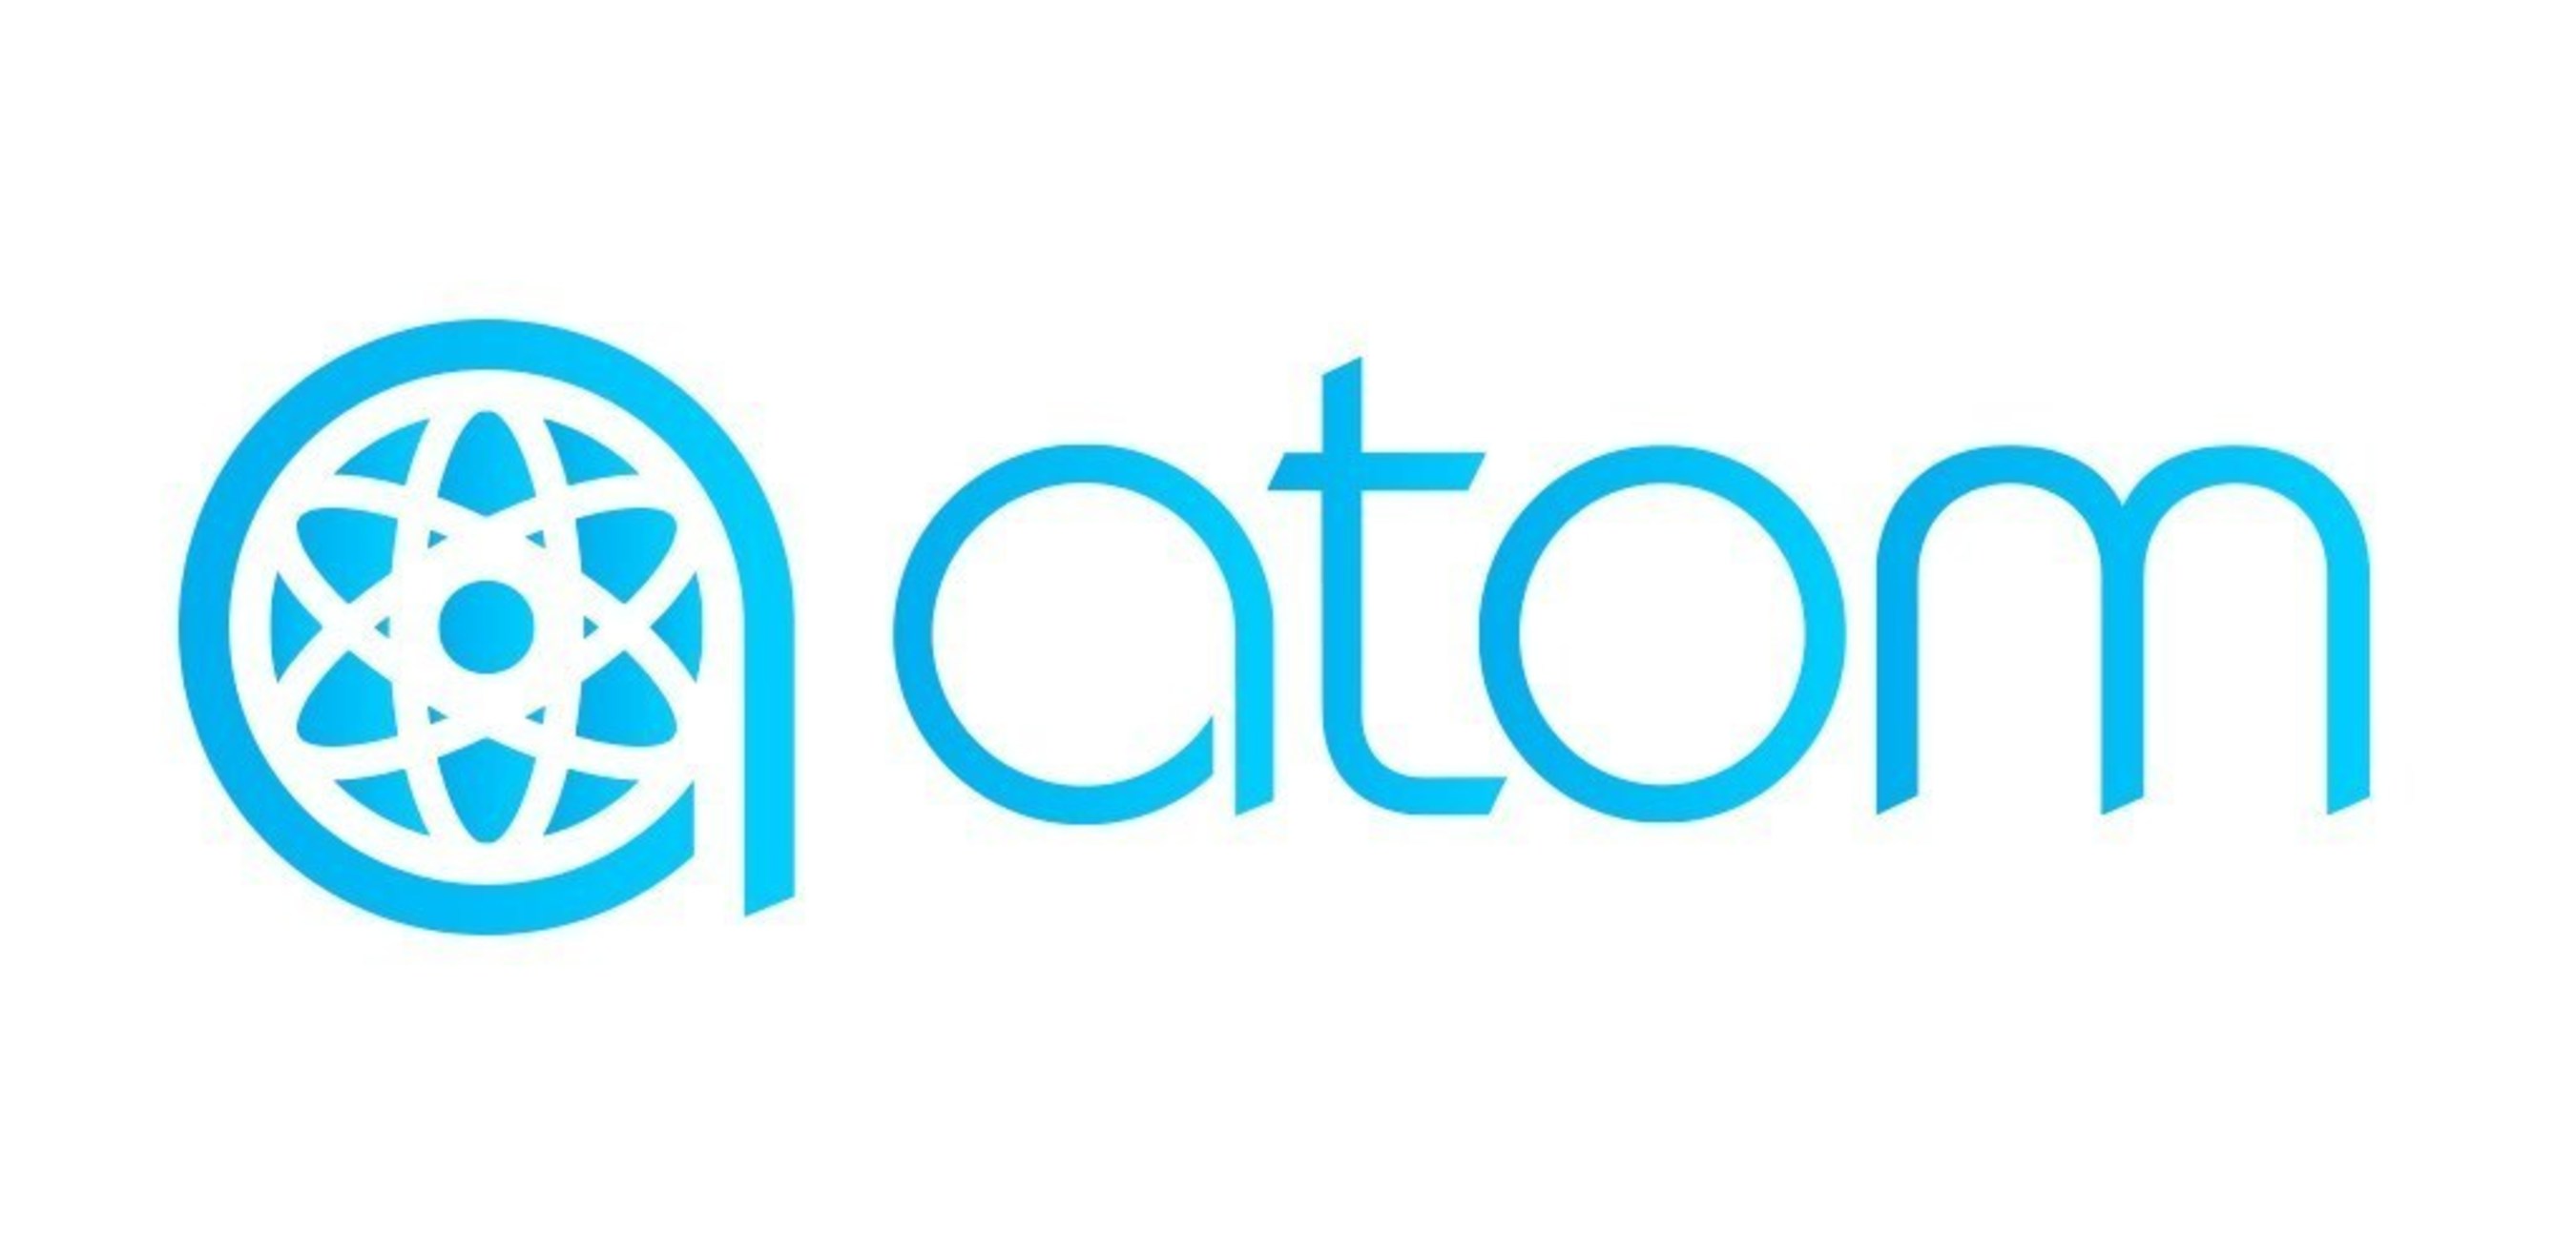 Atom Tickets Premieres in Los Angeles/Southern California, Atlanta, Nashville in Partnership with Regal Cinemas, AMC Theatres